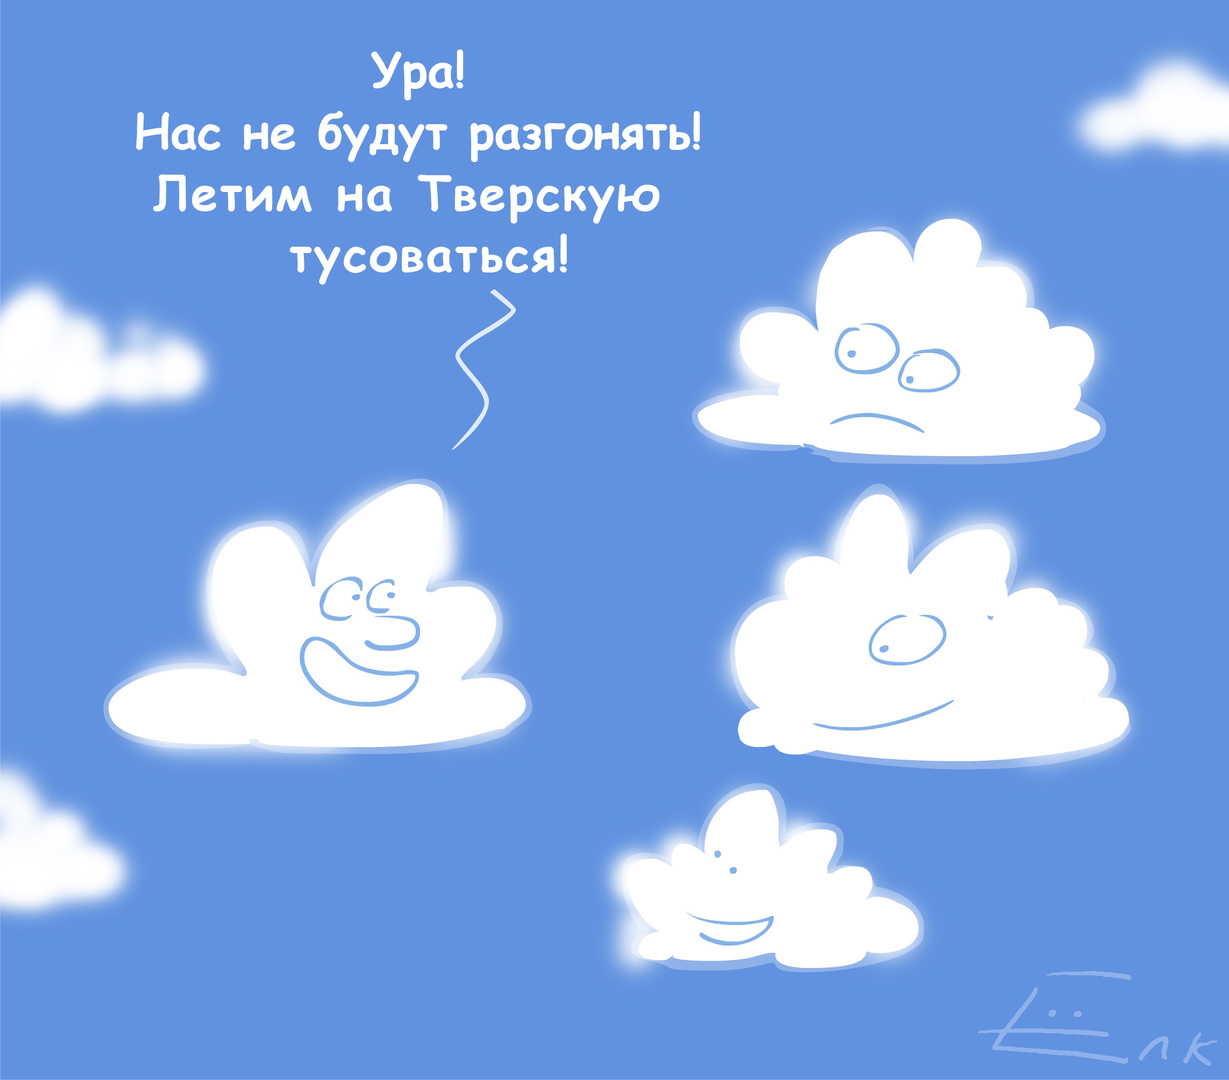 مركز روسي للأرصاد الجوية لا يستبعد تفريق السحب في سماء موسكو يوم 9 مايو الجاري